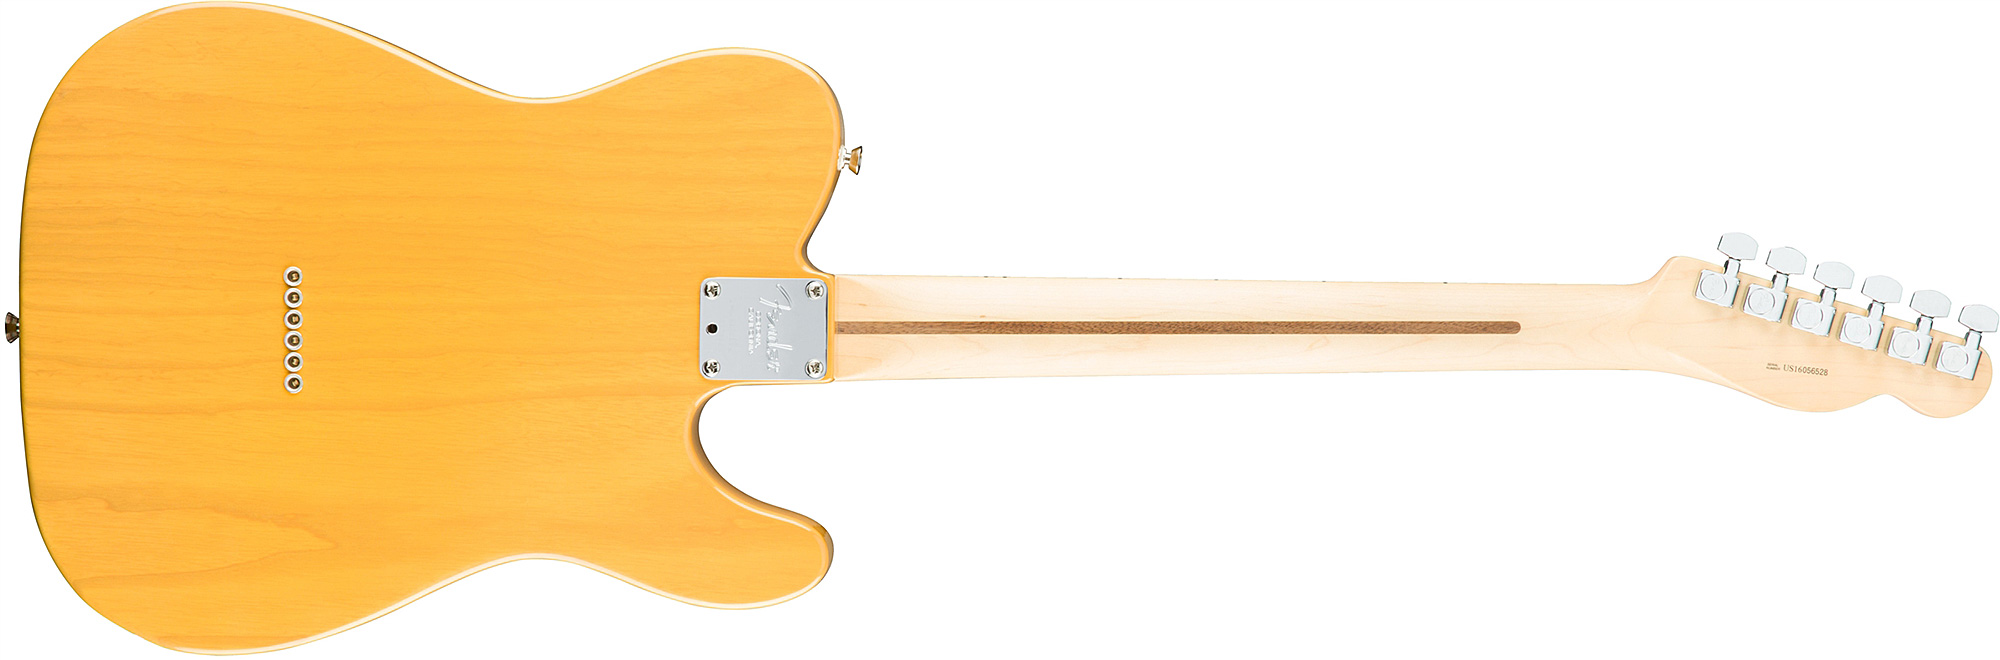 Fender Tele American Professional Lh Usa Gaucher 2s Mn - Butterscotch Blonde - Guitarra electrica para zurdos - Variation 1